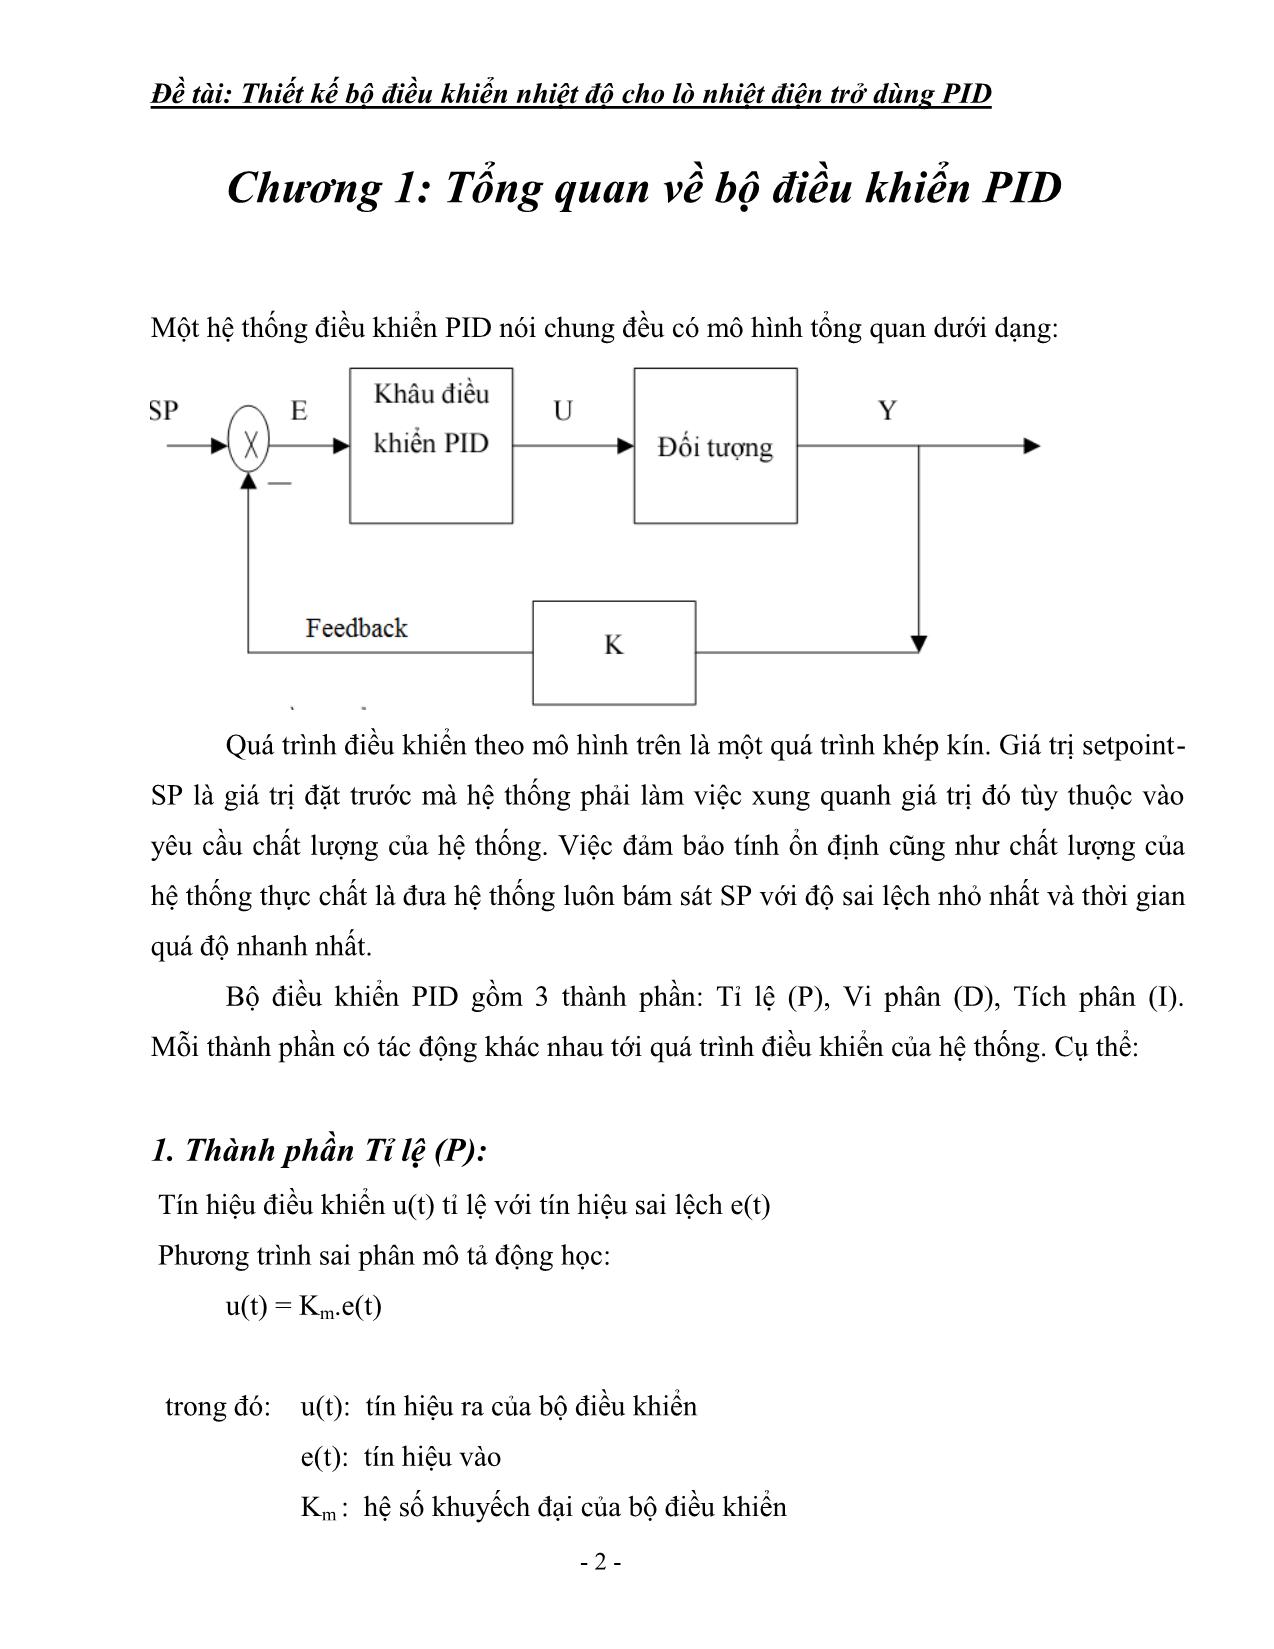 Tiểu luận Thiết kế bộ điều khiển nhiệt độ cho lò nhiệt điện trở dùng PID trang 3